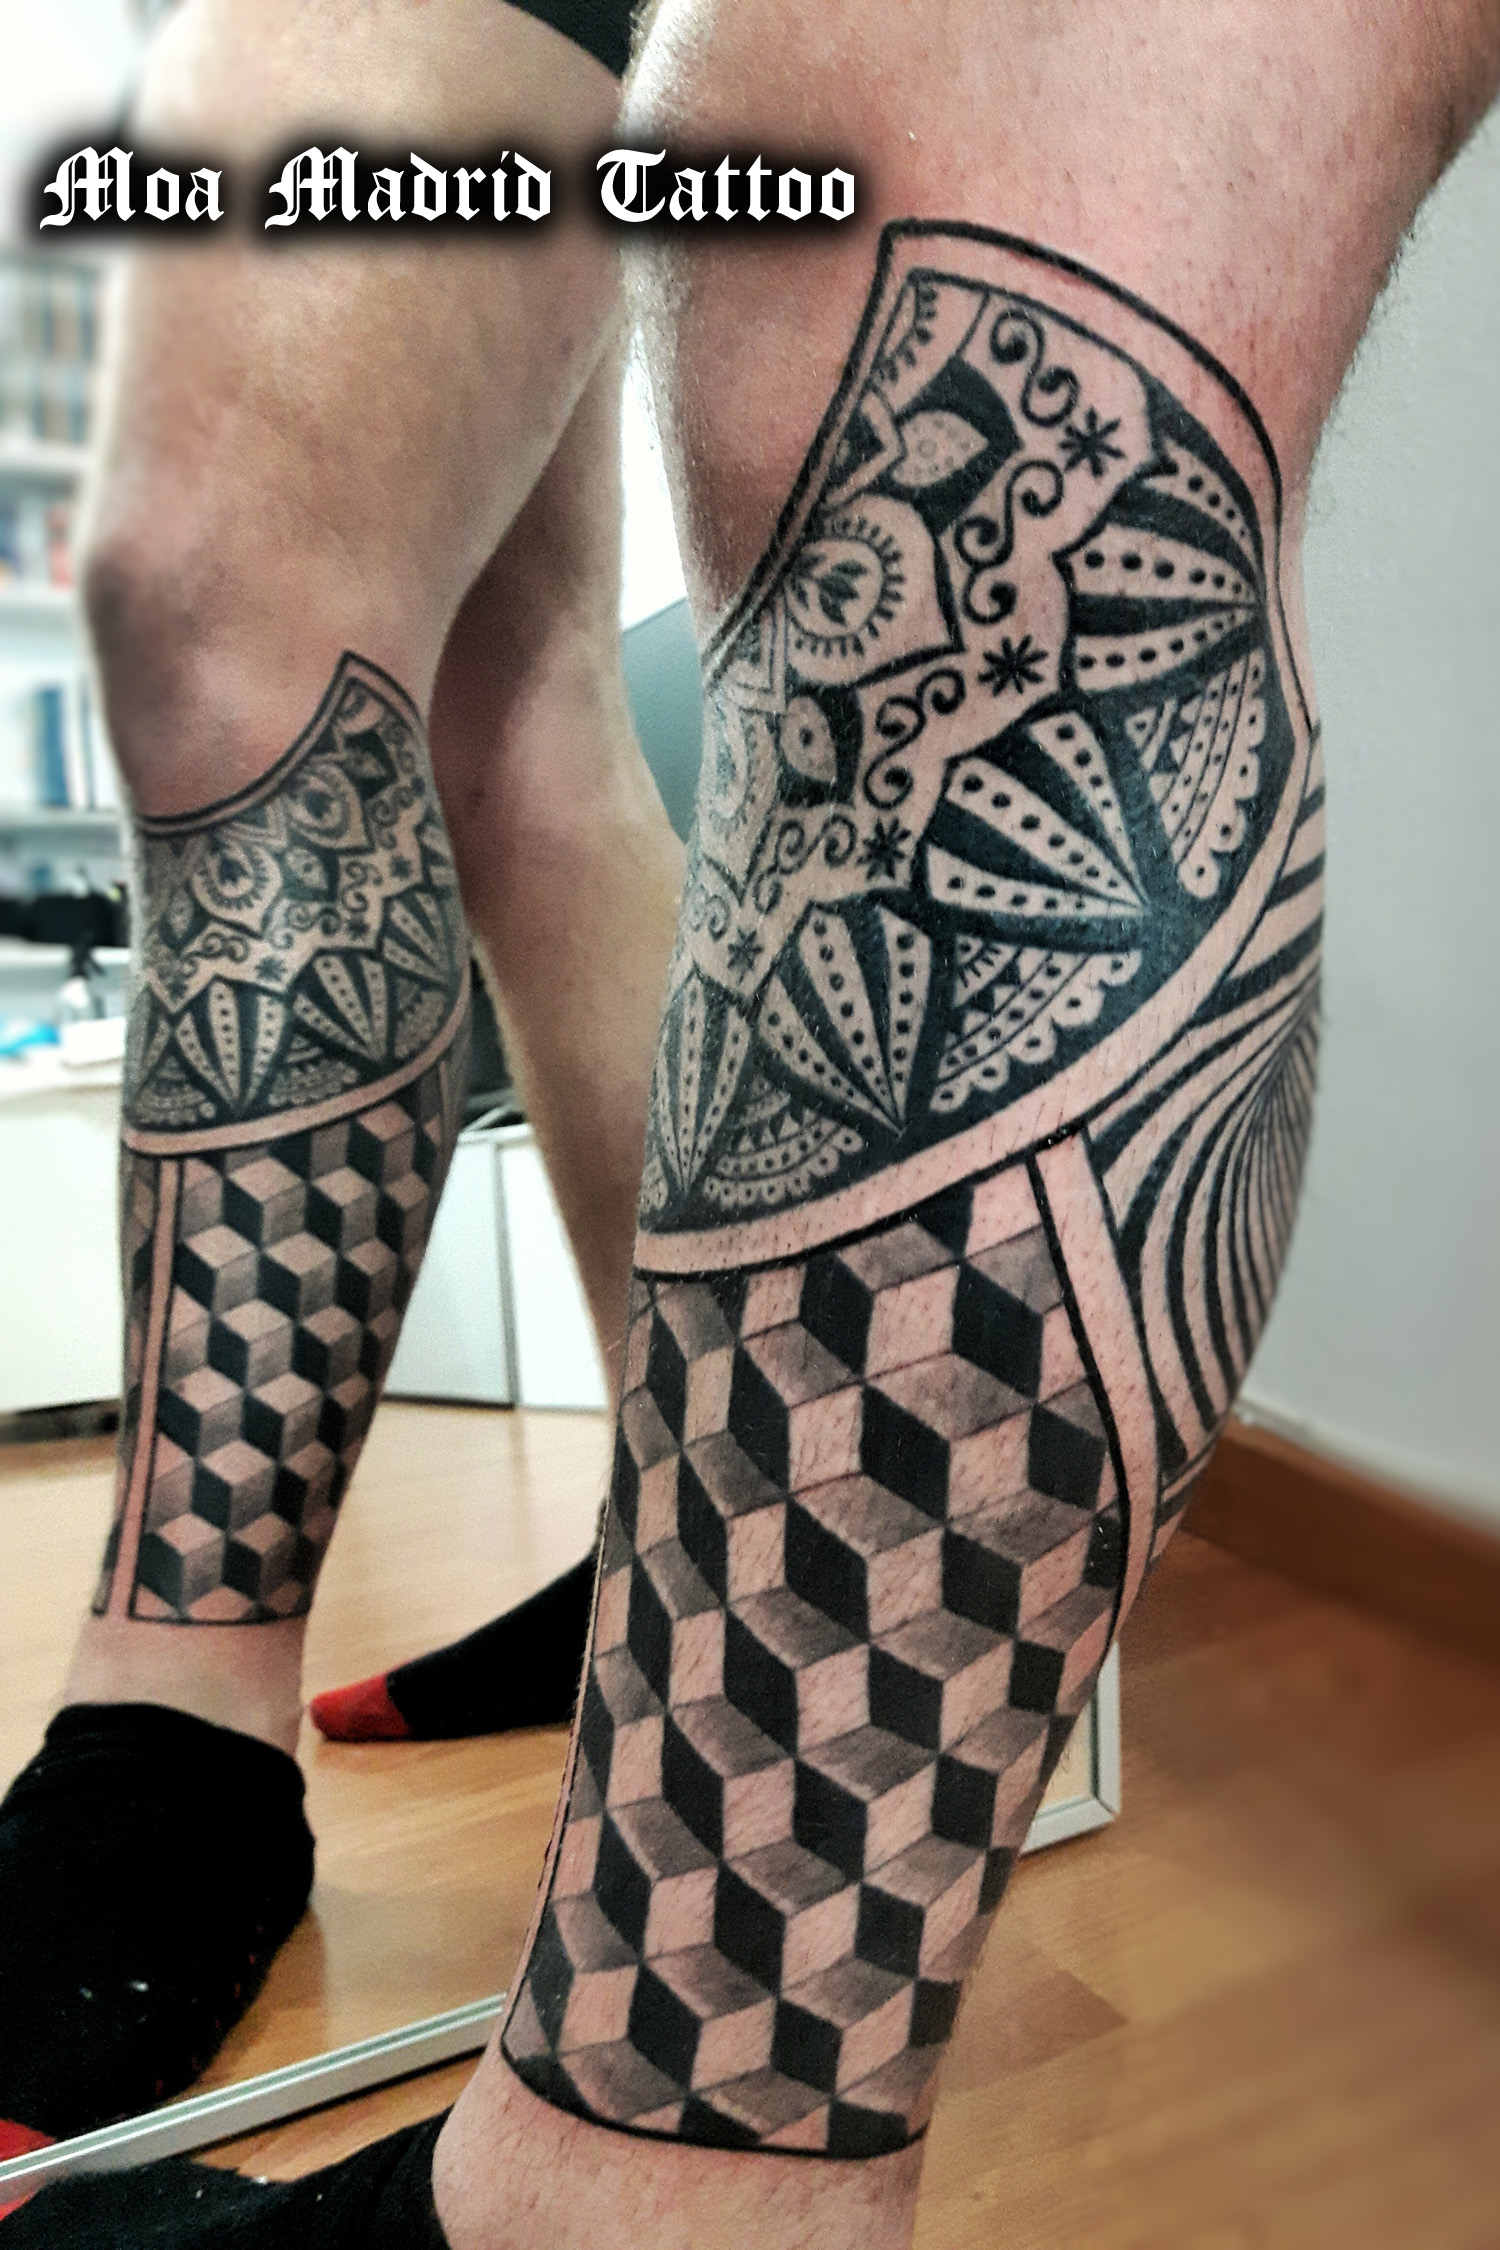 Pierna tatuada con motivos geométricos y mandala